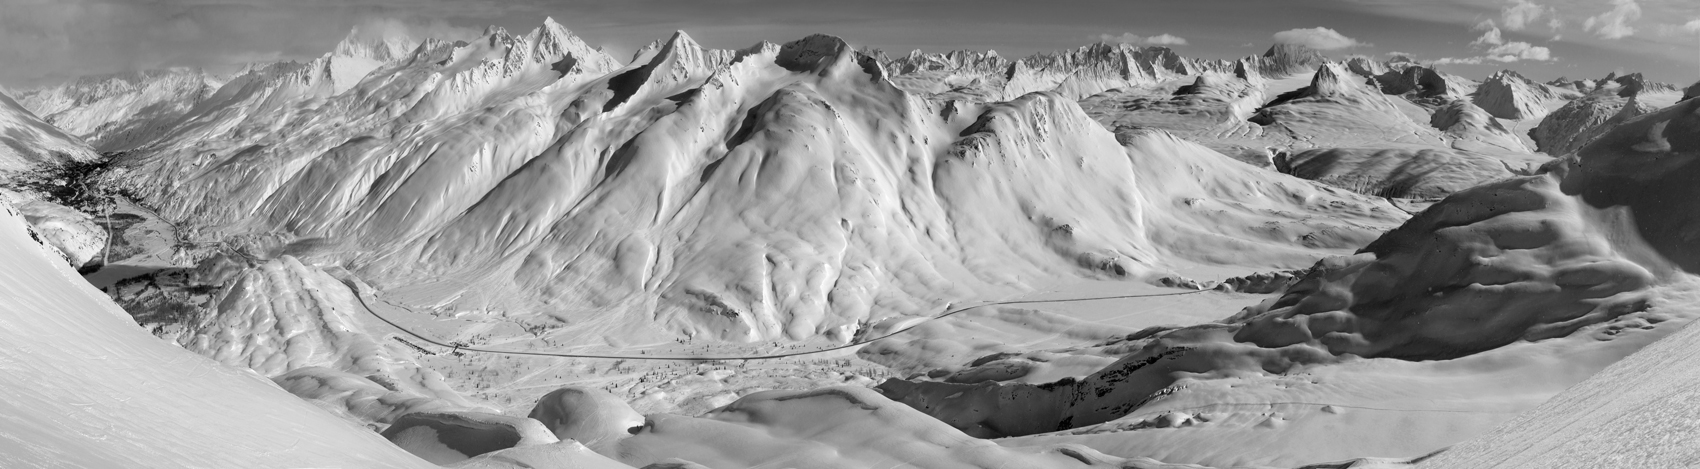 Jon Wyatt Photography - Snowy peaks of Thompson Pass, Chugach Mountains, Valdez, Alaska